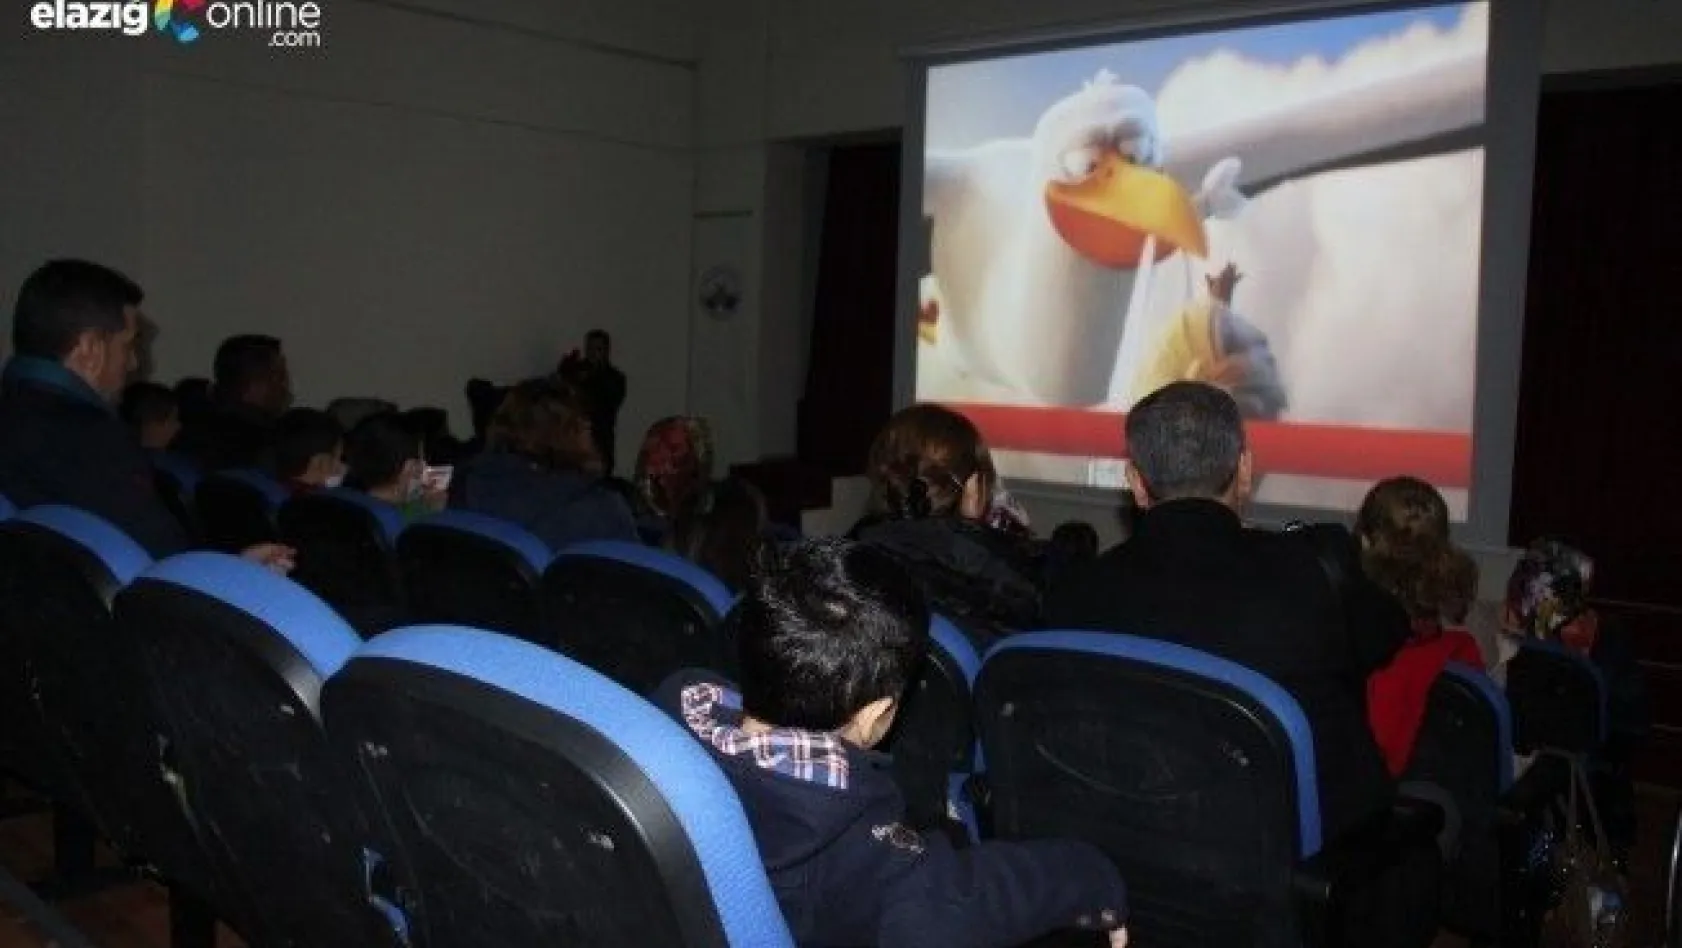 Elazığ'da özel çocukların sinema keyfi